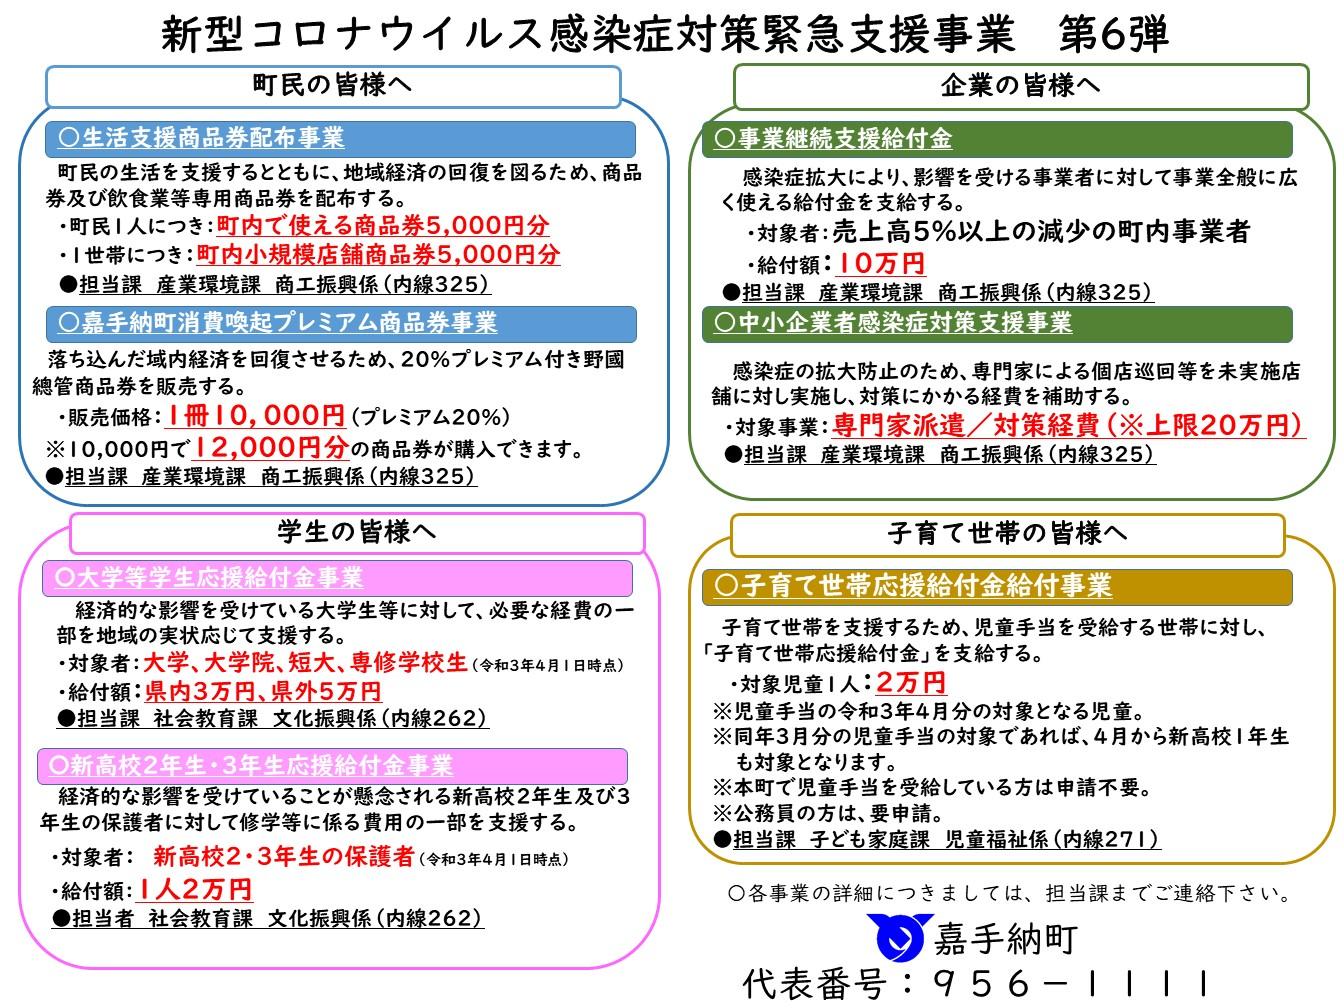 【第6弾】新型コロナウイルス感染症対策緊急支援事業  .jpg